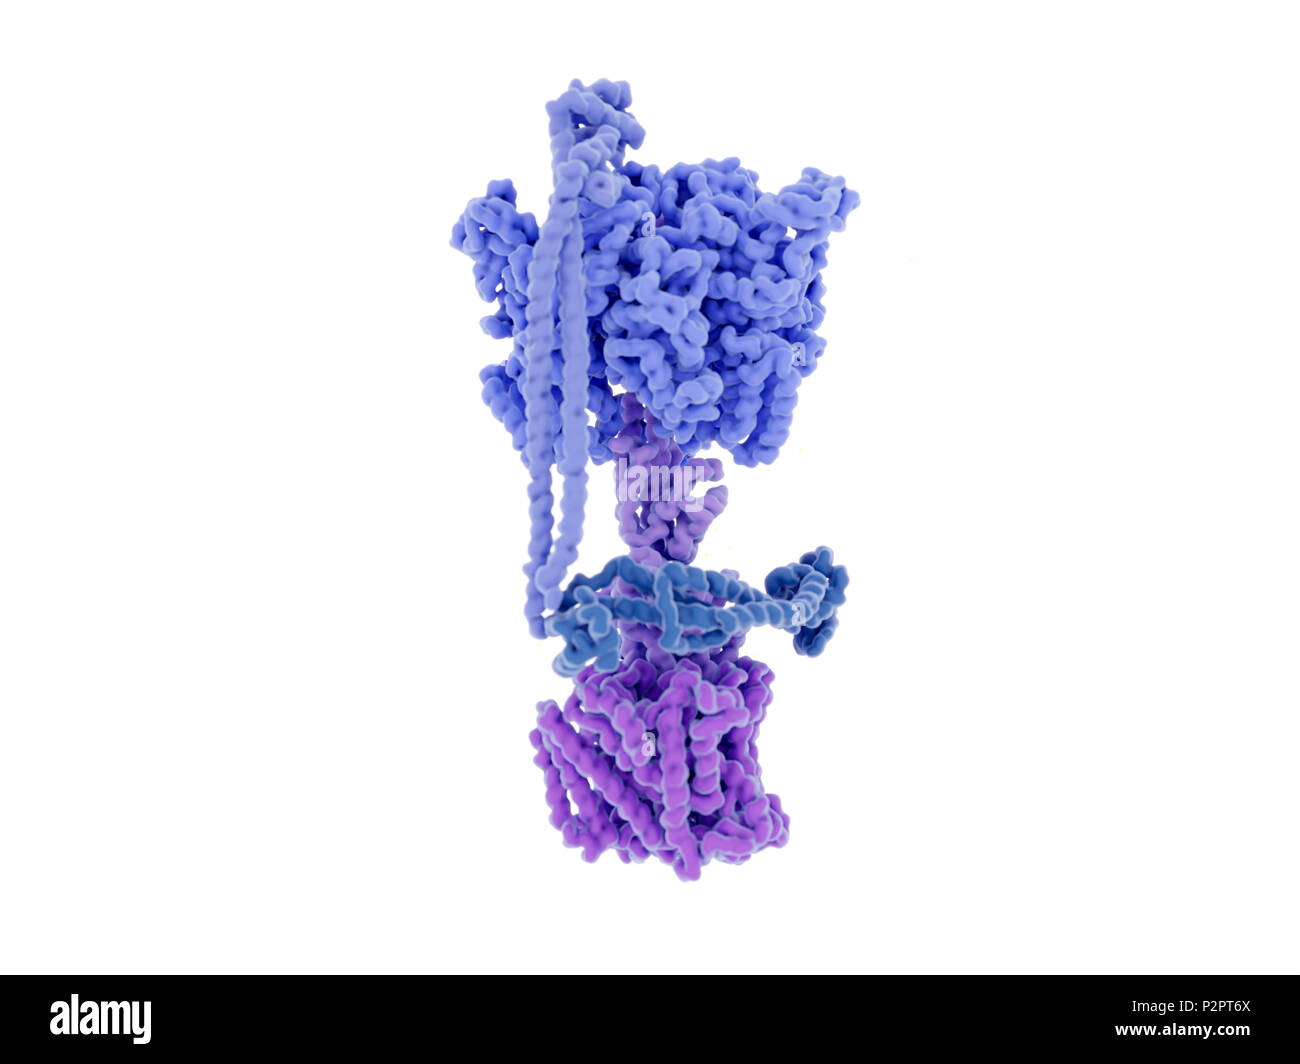 ATP sintasi complesso di enzima. Illustrazione del complesso di enzima che aziona la sintesi dell'energia-molecola portante di ATP (adenosina trifosfato). Conosciuto come ATP sintasi, questo complesso di enzima è trovato annegato in mitocondriale di membrana interna (non mostrato). La parte inferiore (viola) è un canale attraverso il quale i protoni (H+) spostare. La parte superiore (blu) è dove la sintesi di ATP avviene. Il complesso proteico ruota come ATP è sintetizzato e protoni che si muovono attraverso i canali. ATP è formata da una reazione fra ADP (adenosina difosfato) e fosfato inorganico (Pi). La struttura dettagliata Foto Stock